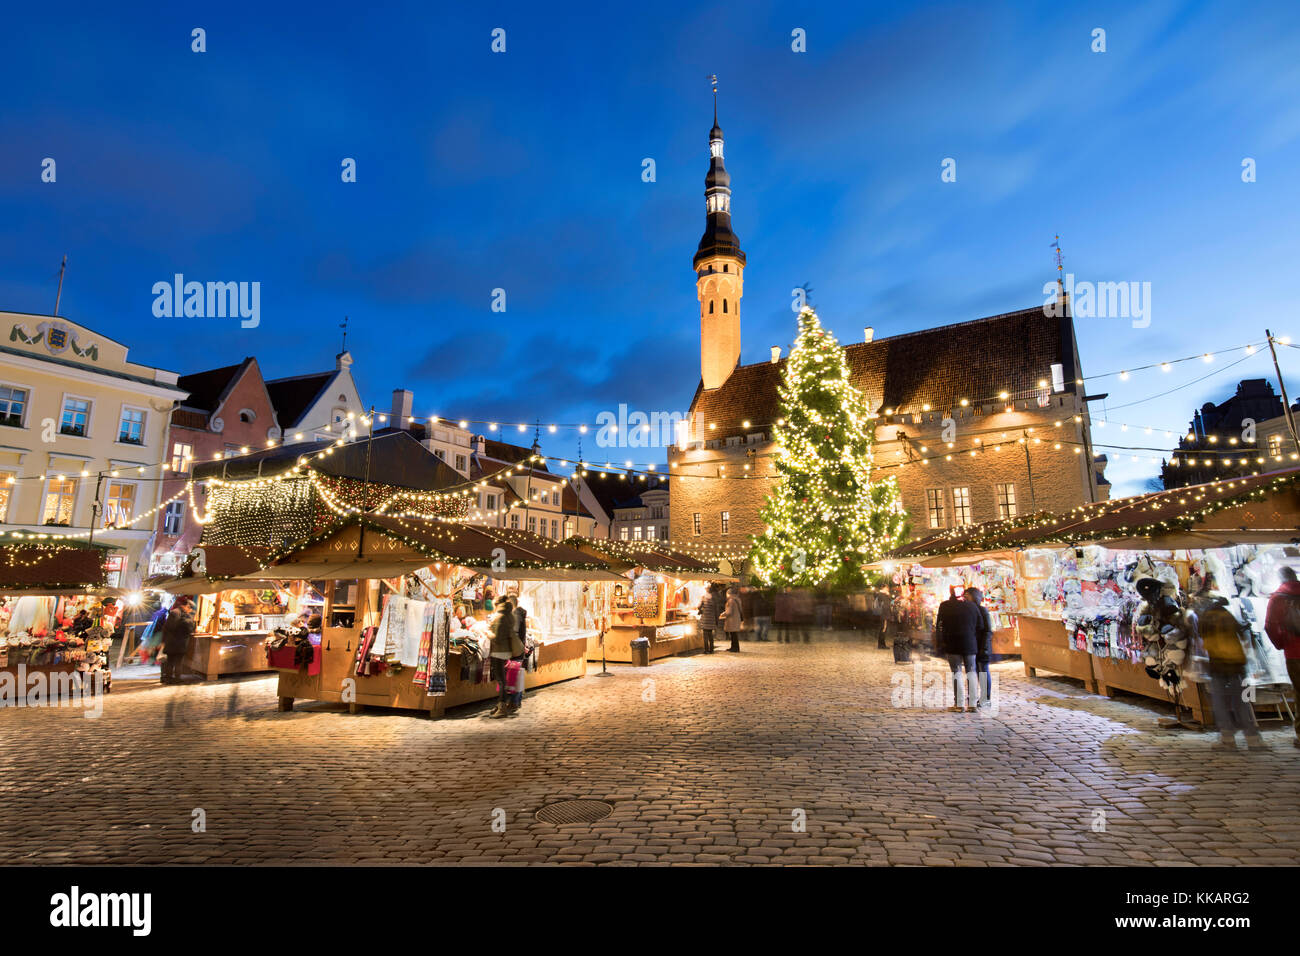 Marché de Noël sur la place de l'Hôtel de ville (Raekoja plats) et Hôtel de ville, vieille ville, site du patrimoine mondial de l'UNESCO, Tallinn, Estonie, Europe Banque D'Images